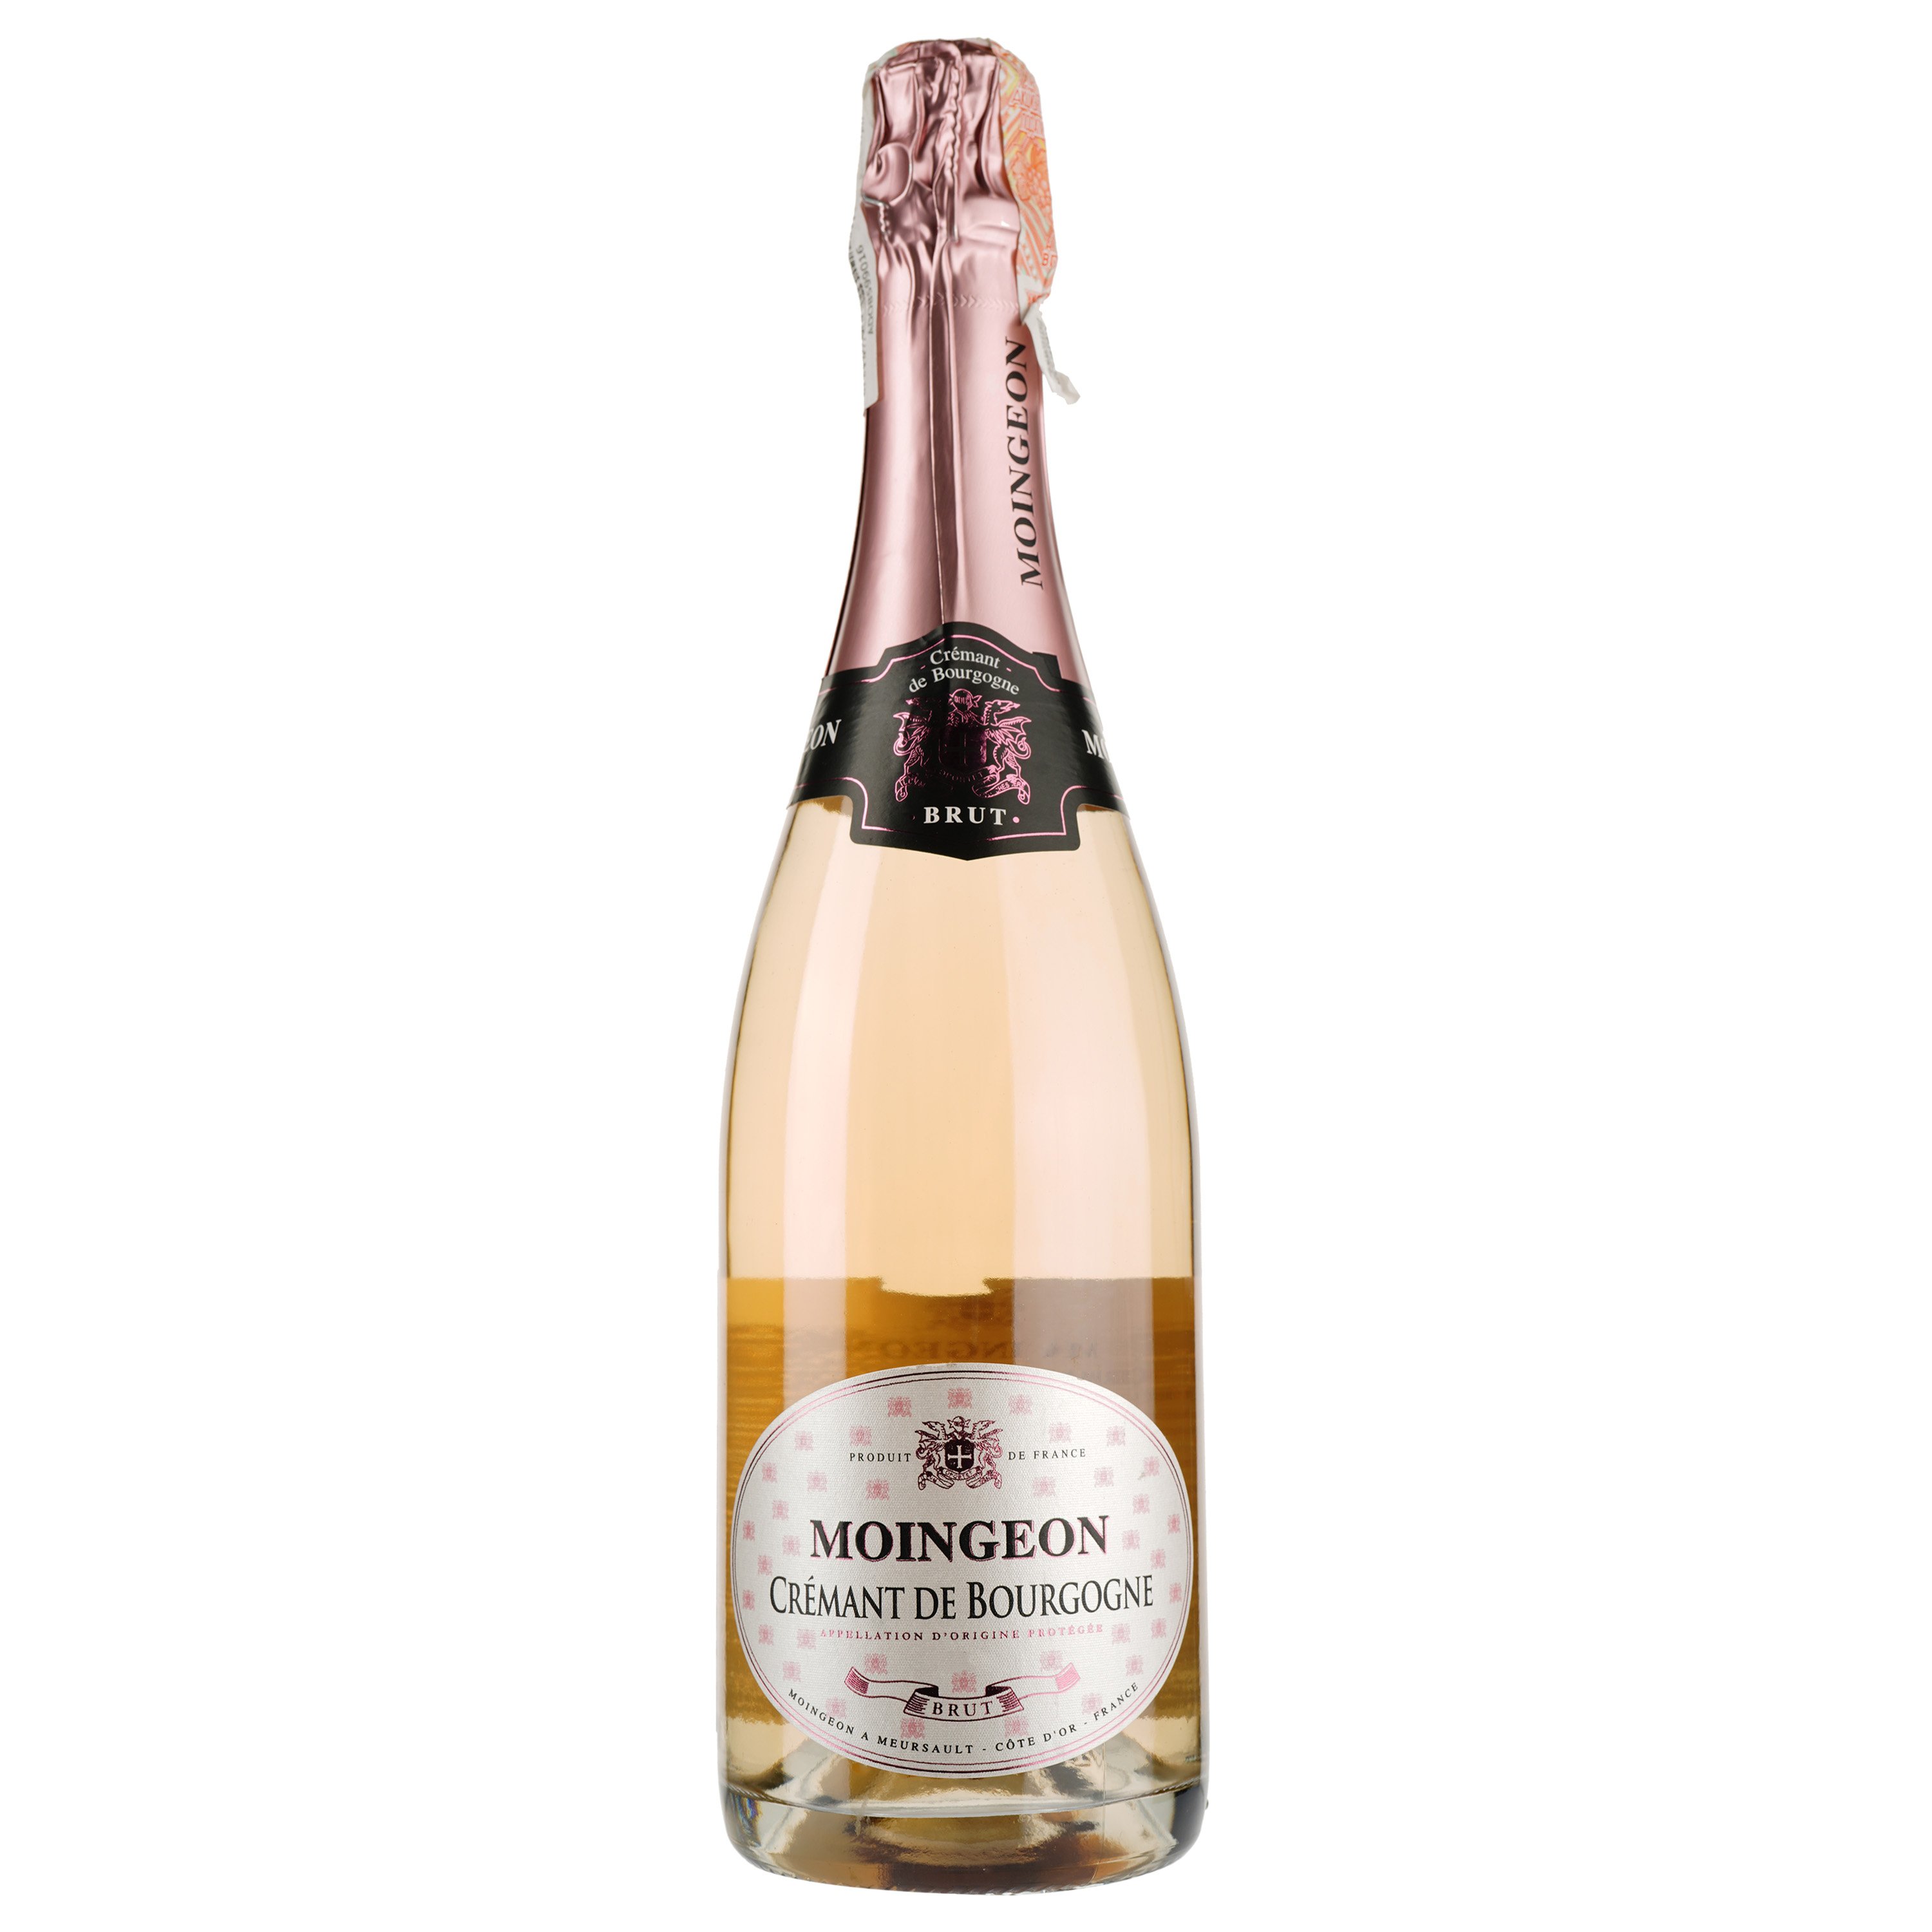 Ігристе вино Les Grands Chais Cremant de Bourgogne Moingeon, рожеве, брют, 12%, 0,75 л - фото 1